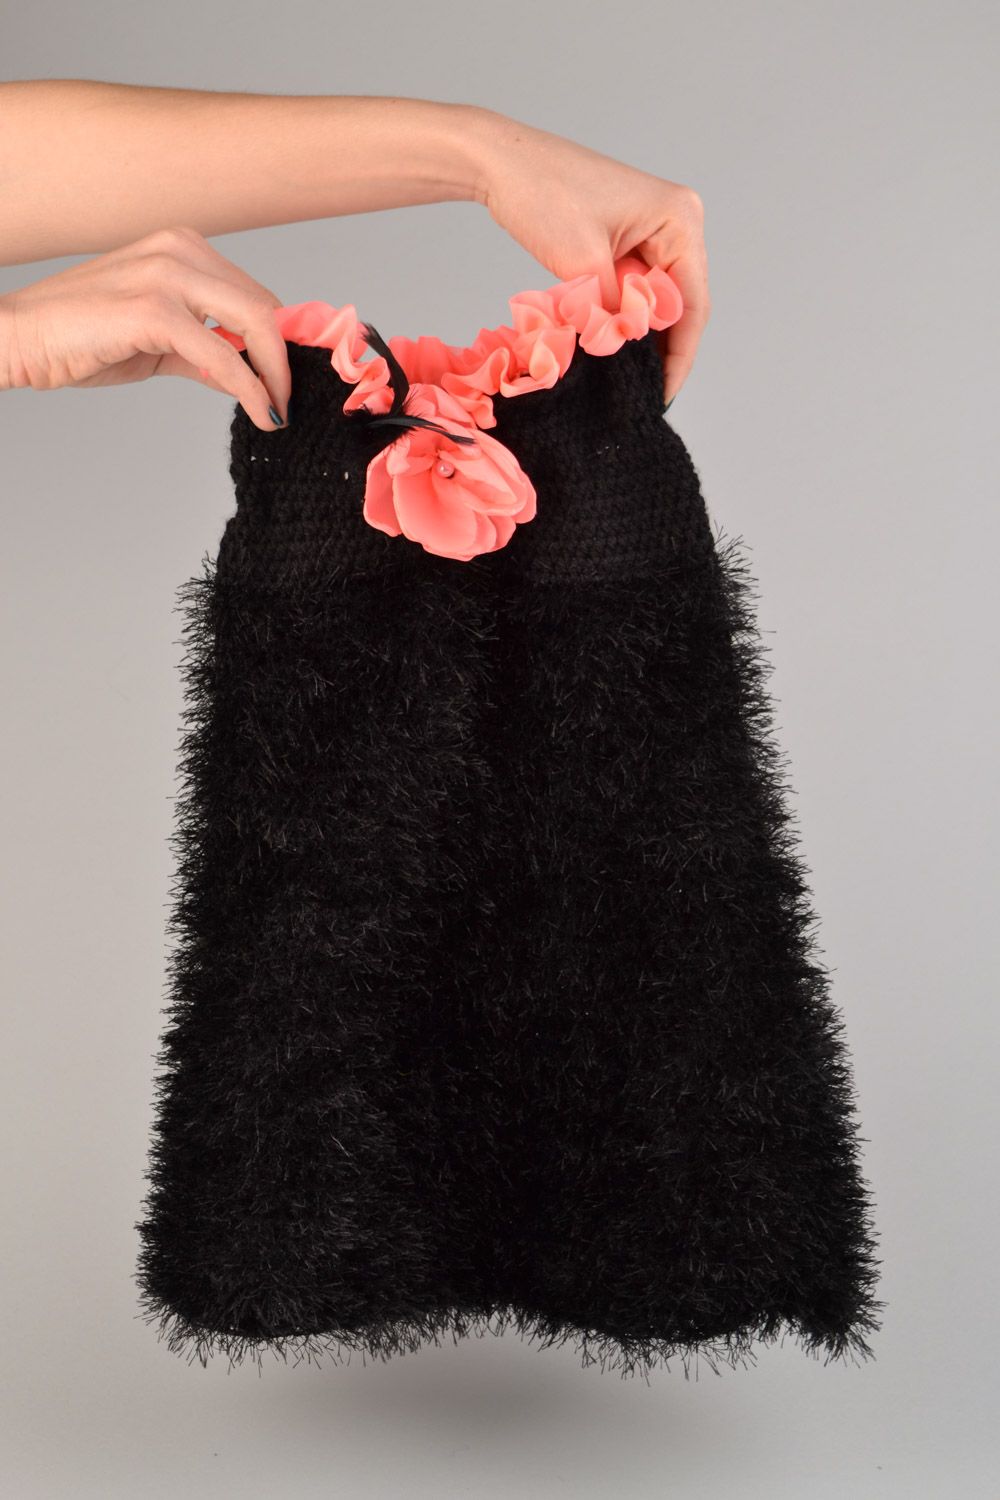 Платье вязаное крючком из акрила детское черное нарядное ручной работы Испанка фото 1